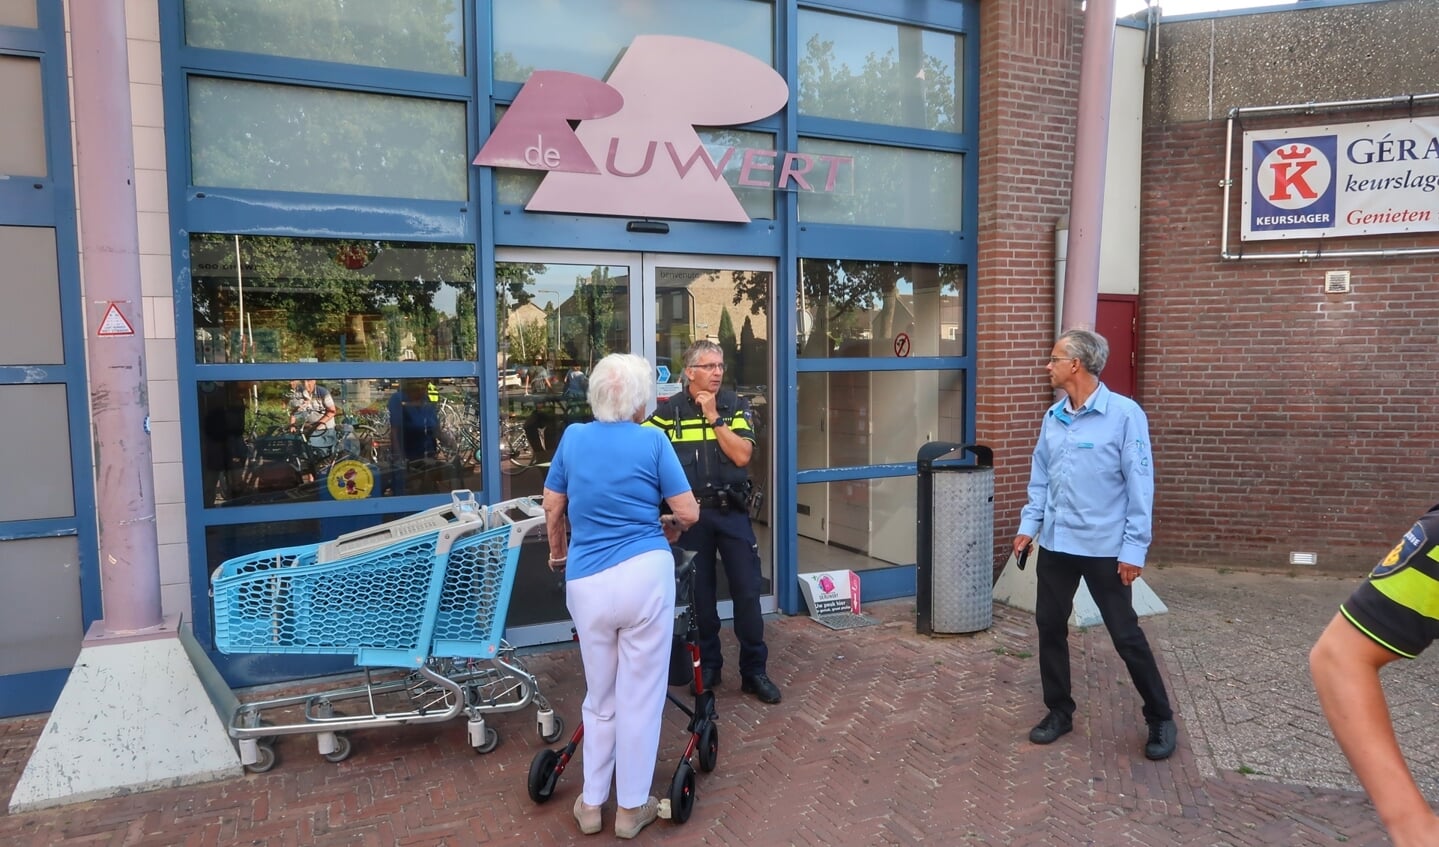 Gaslek bij de Albert Heijn aan winkelcentrum De Ruwert. (Foto: Gabor Heeres, Foto Mallo)